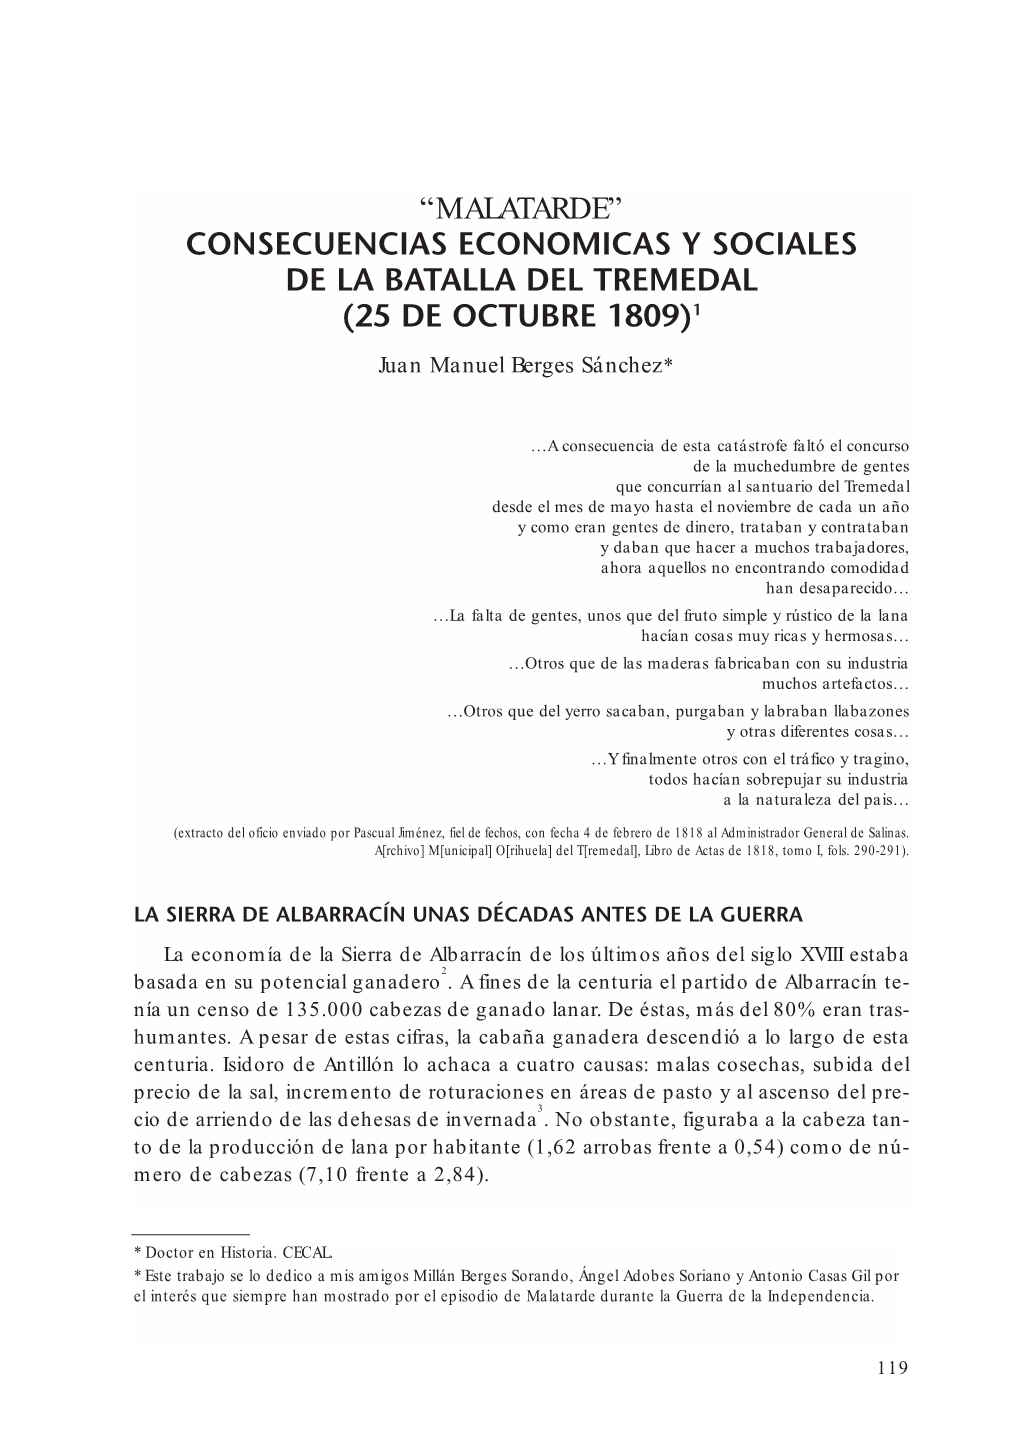 Consecuencias Economicas Y Sociales De La Batalla Del Tremedal (25 De Octubre 1809)1